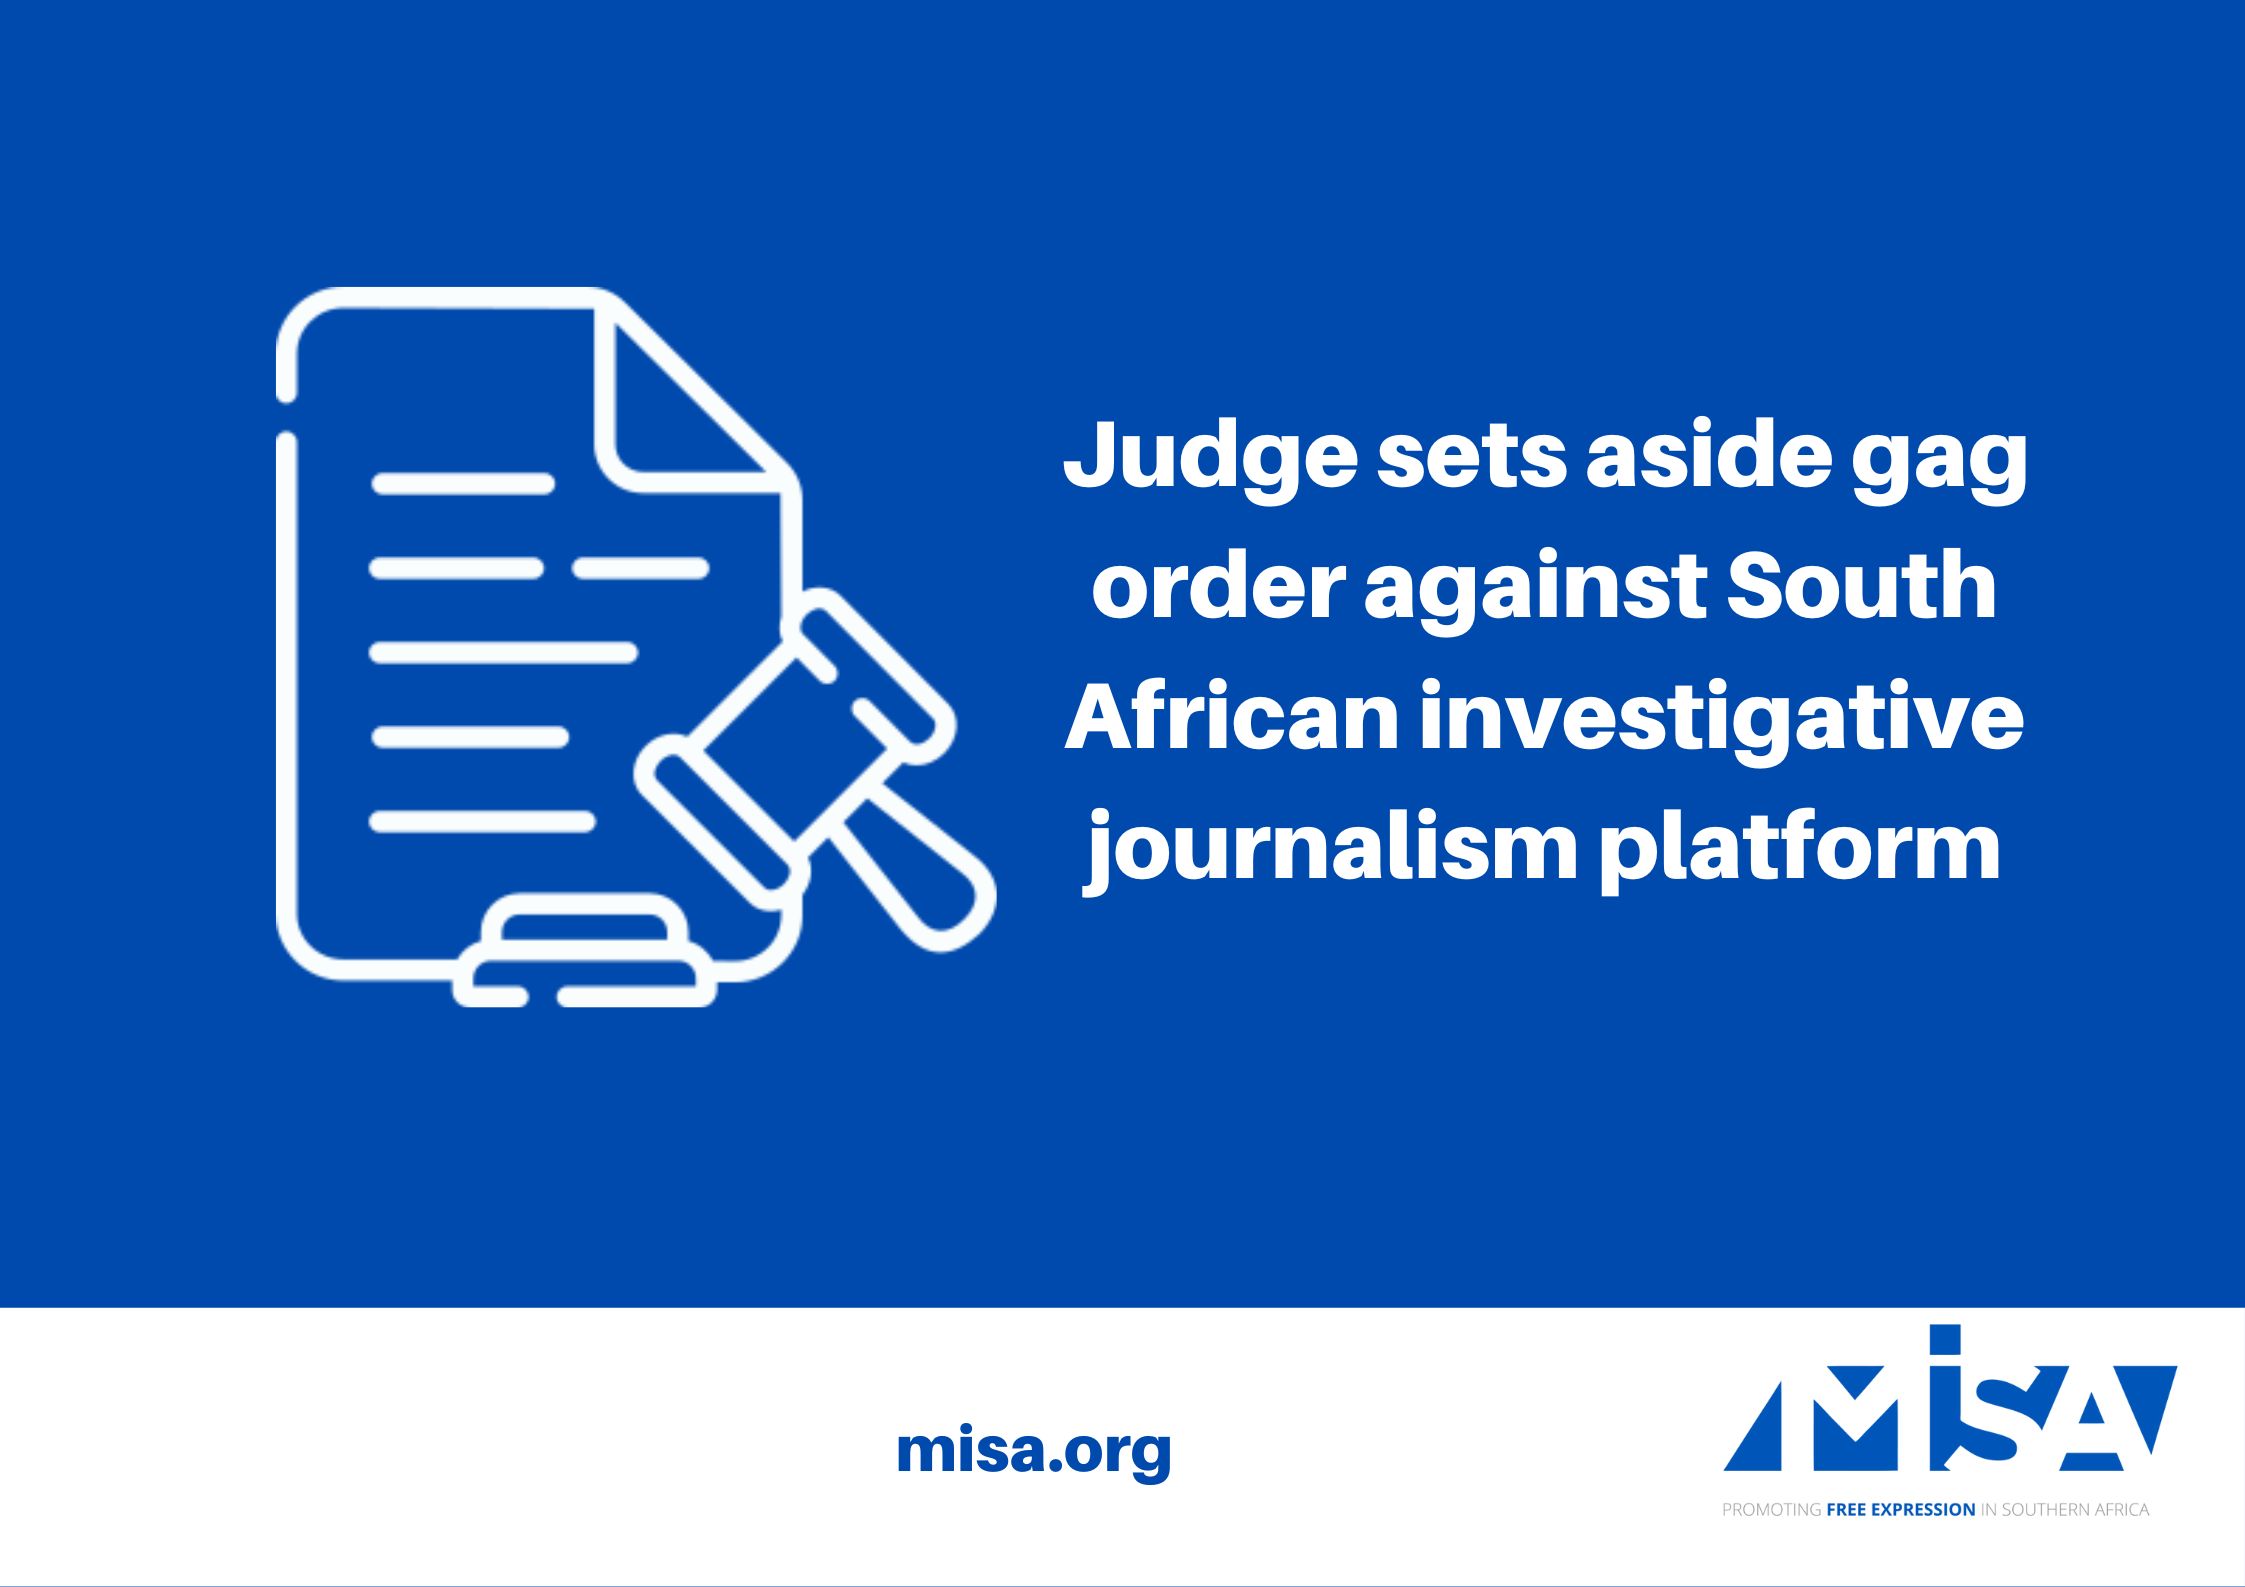 Judge sets aside gag order against South African investigative journalism platform